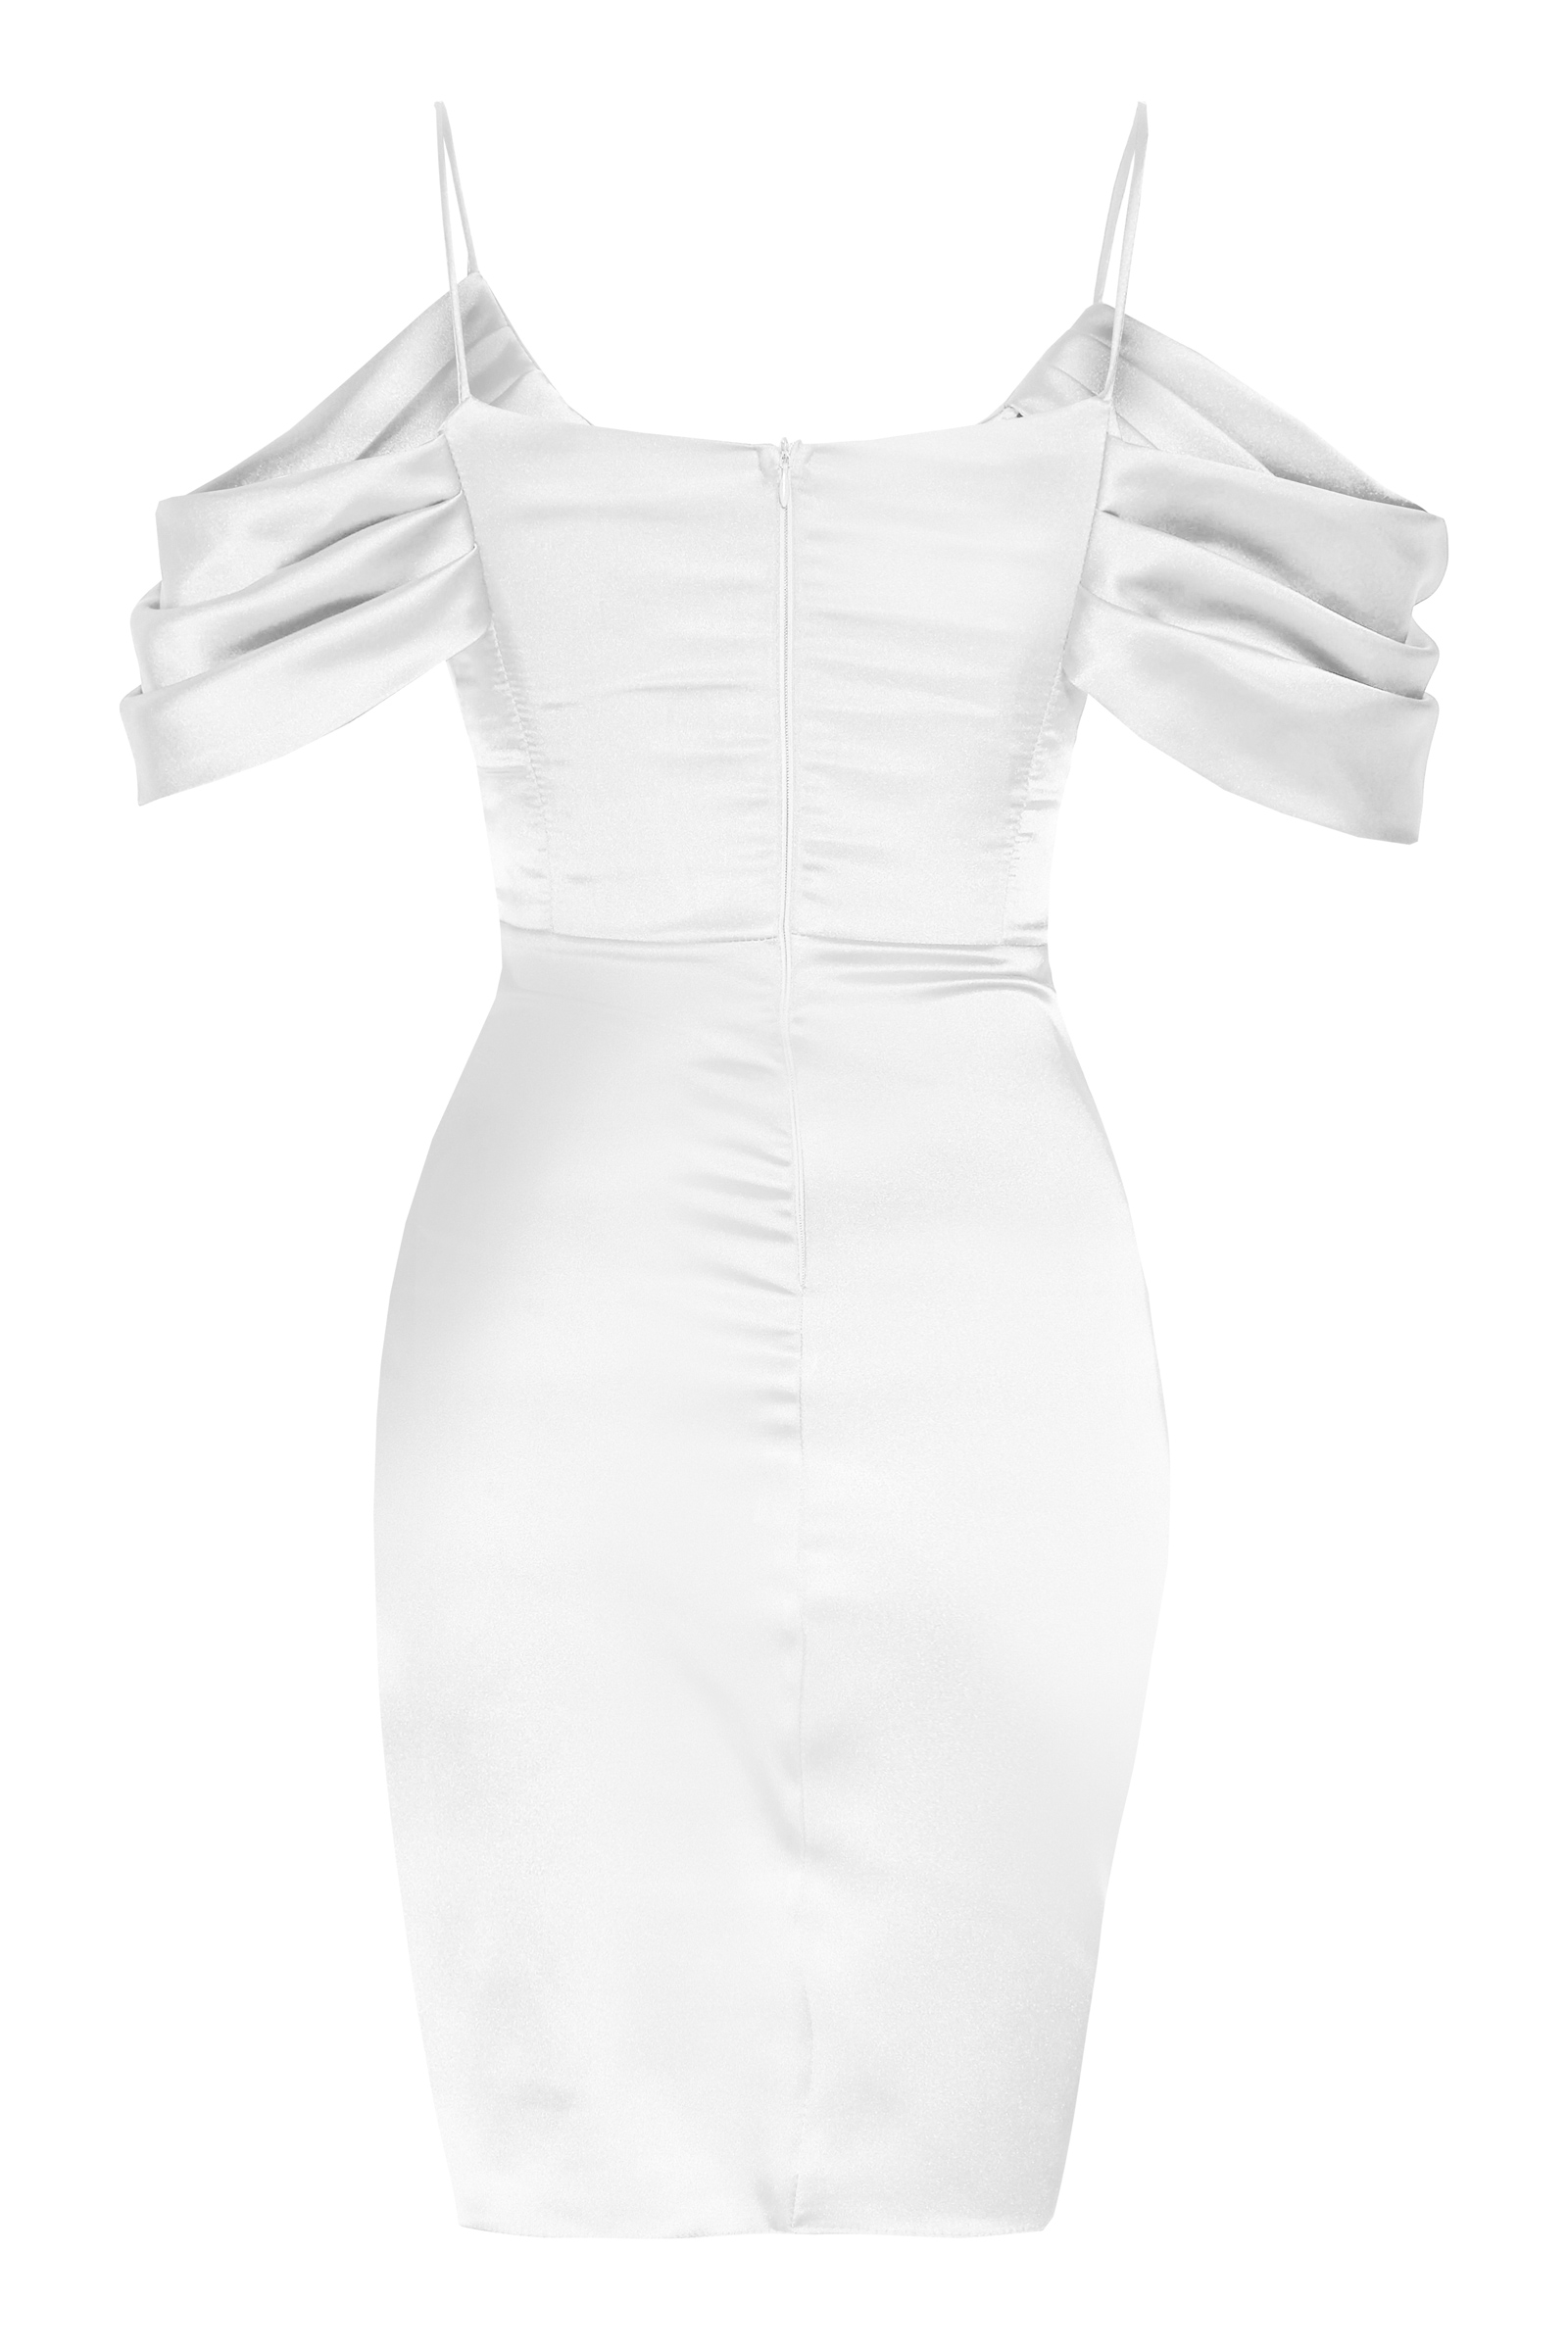 White plus size satin short sleeve mini dress